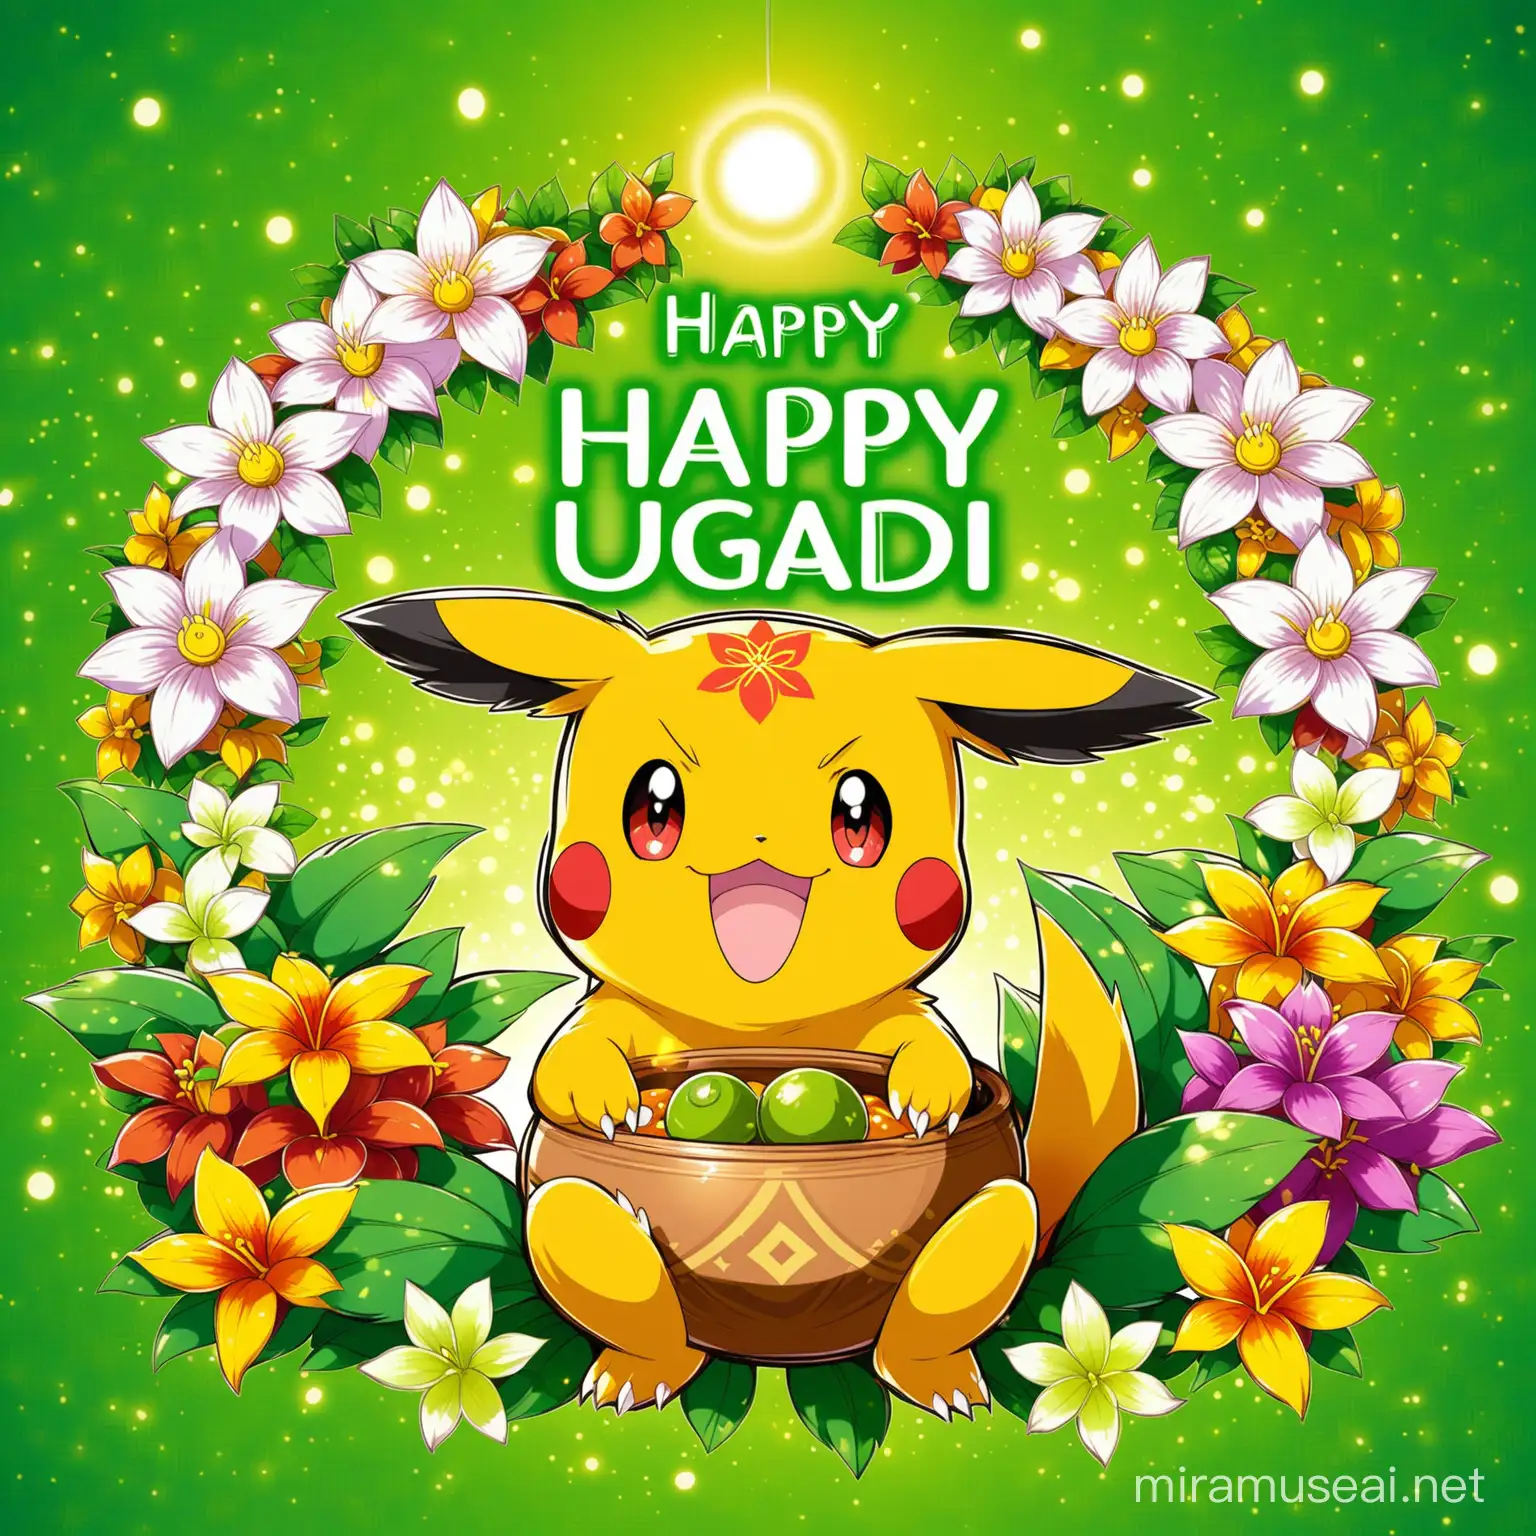 Joyful Pokemon Celebrating Ugadi Festival with Traditional Elements